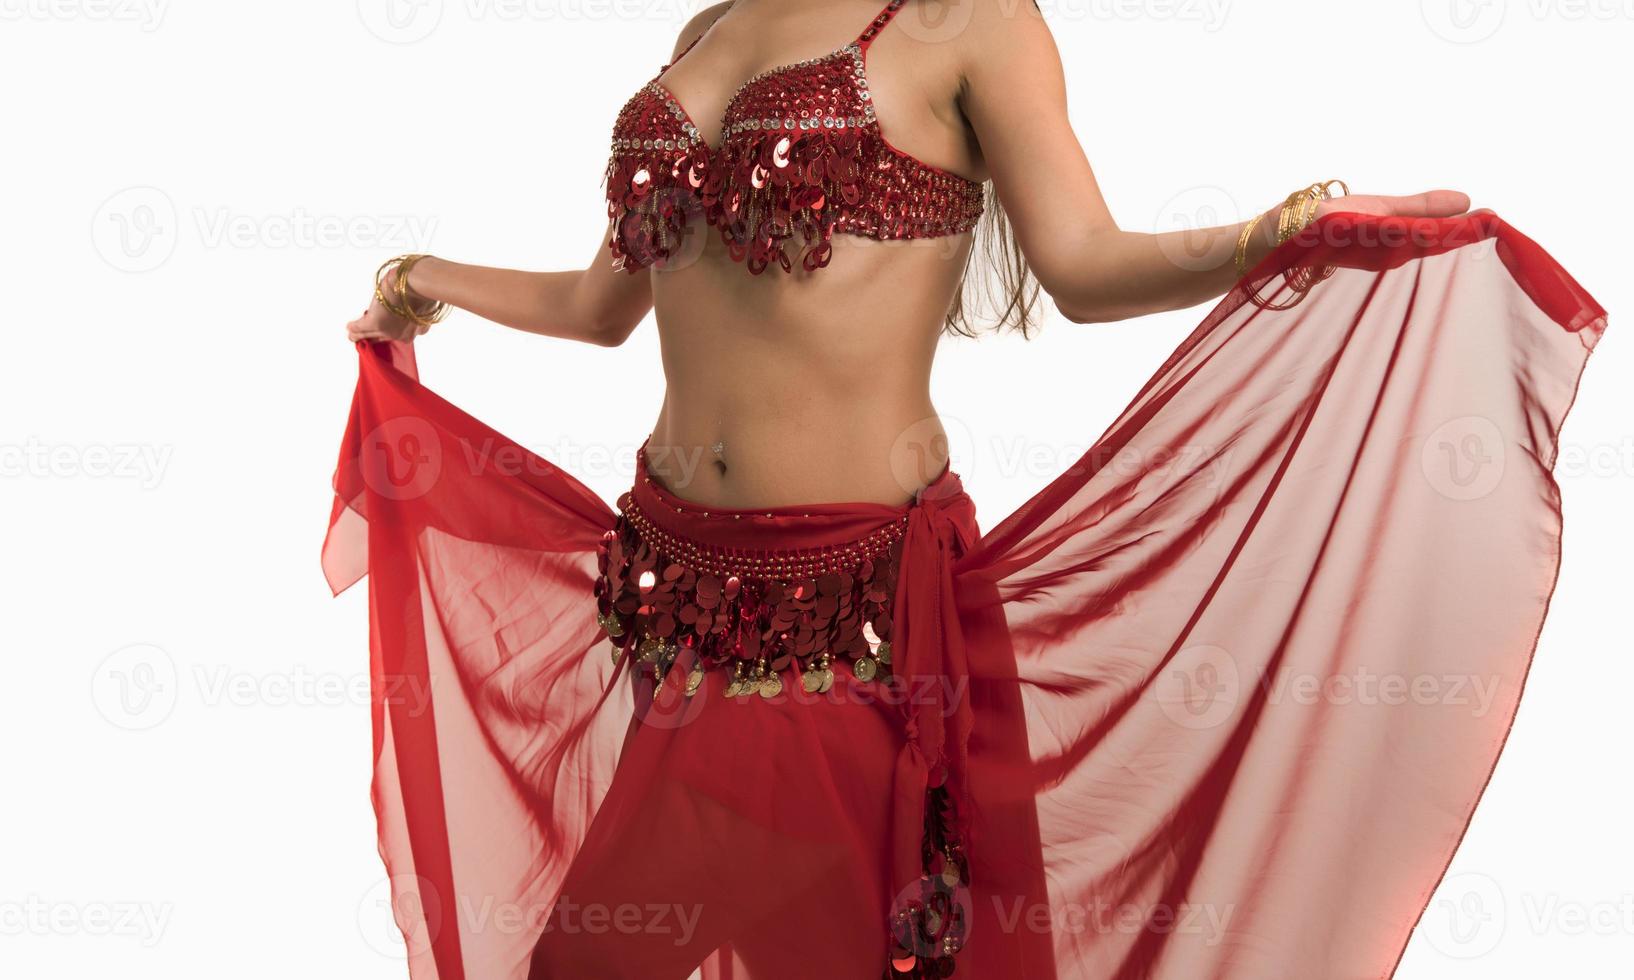 mooi buik danser jong vrouw in prachtig rood en zwart kostuum jurk foto